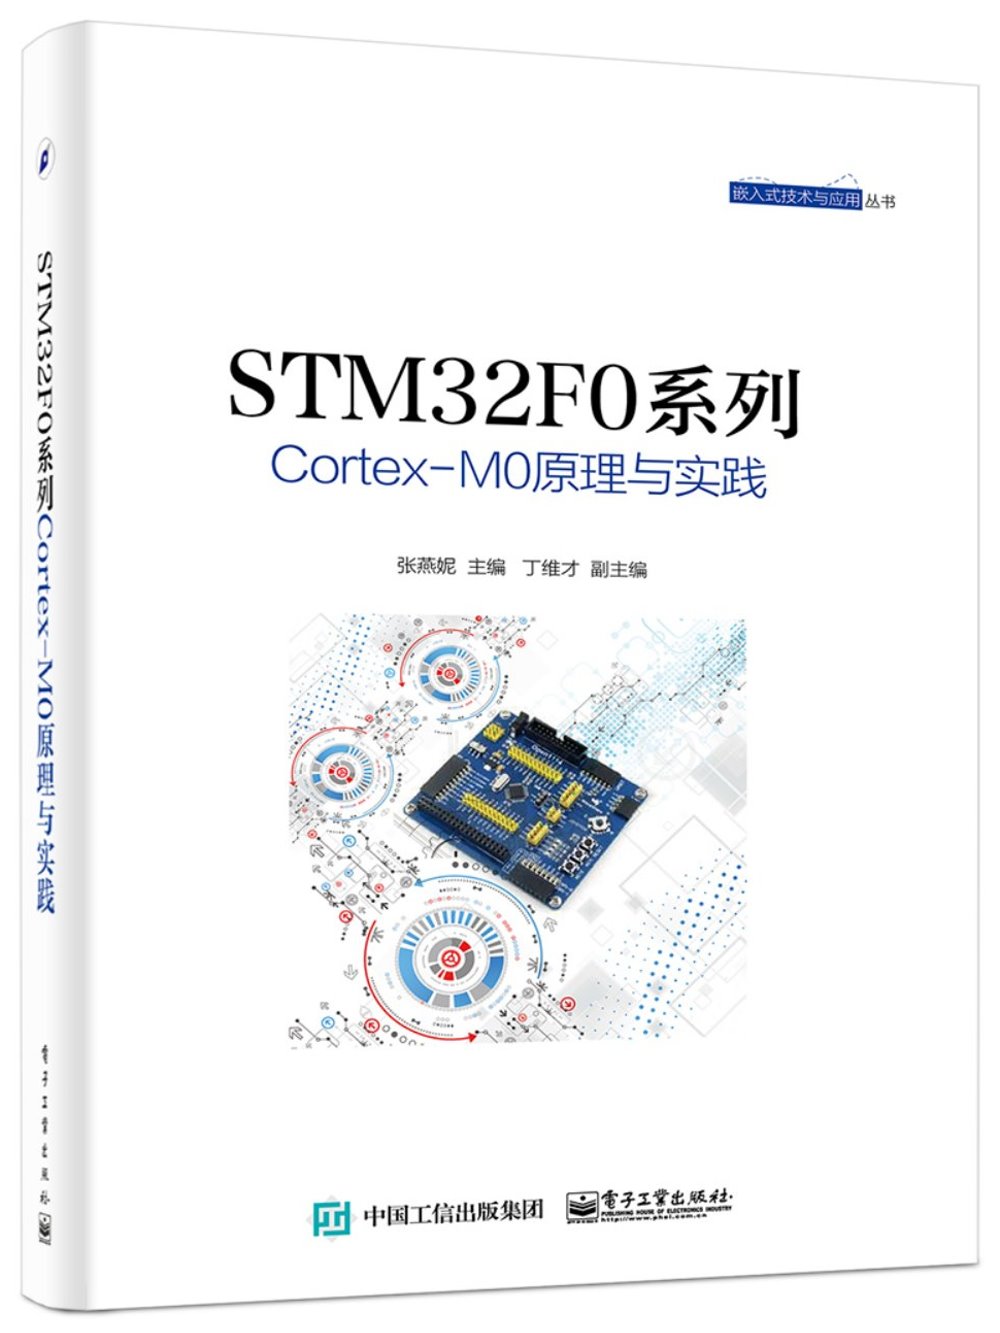 STM32F0系列Cortex-M0原理與實踐